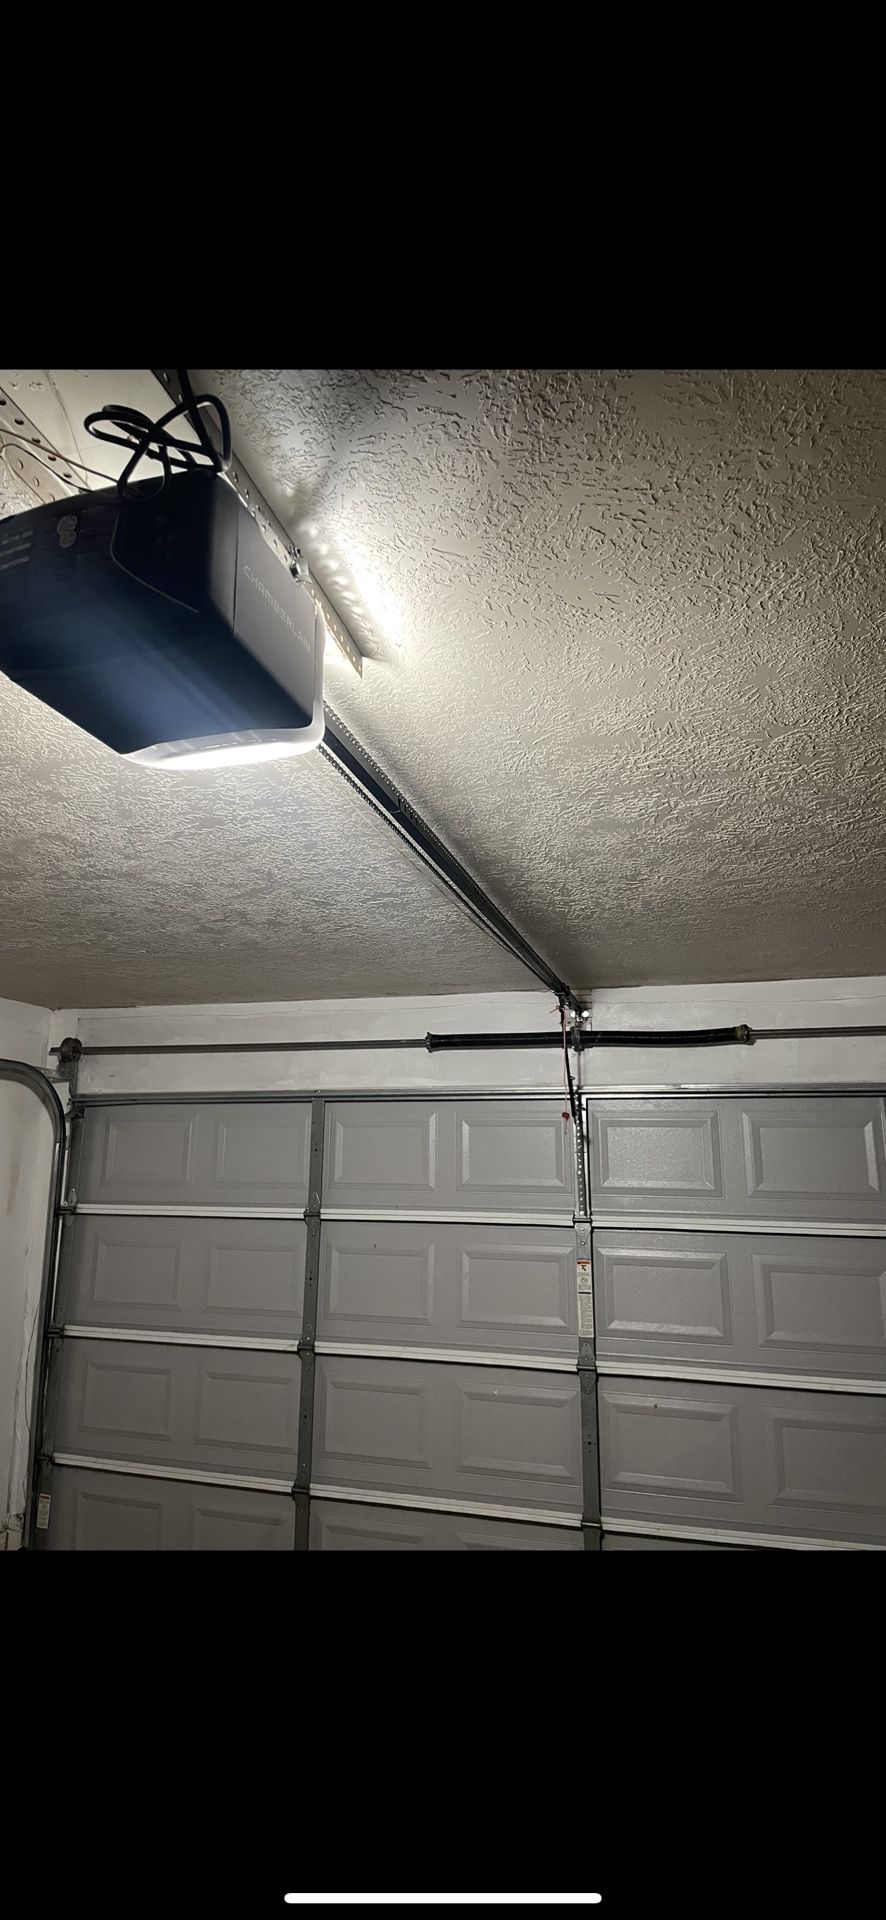 Automatic-Garage-Door-Opener